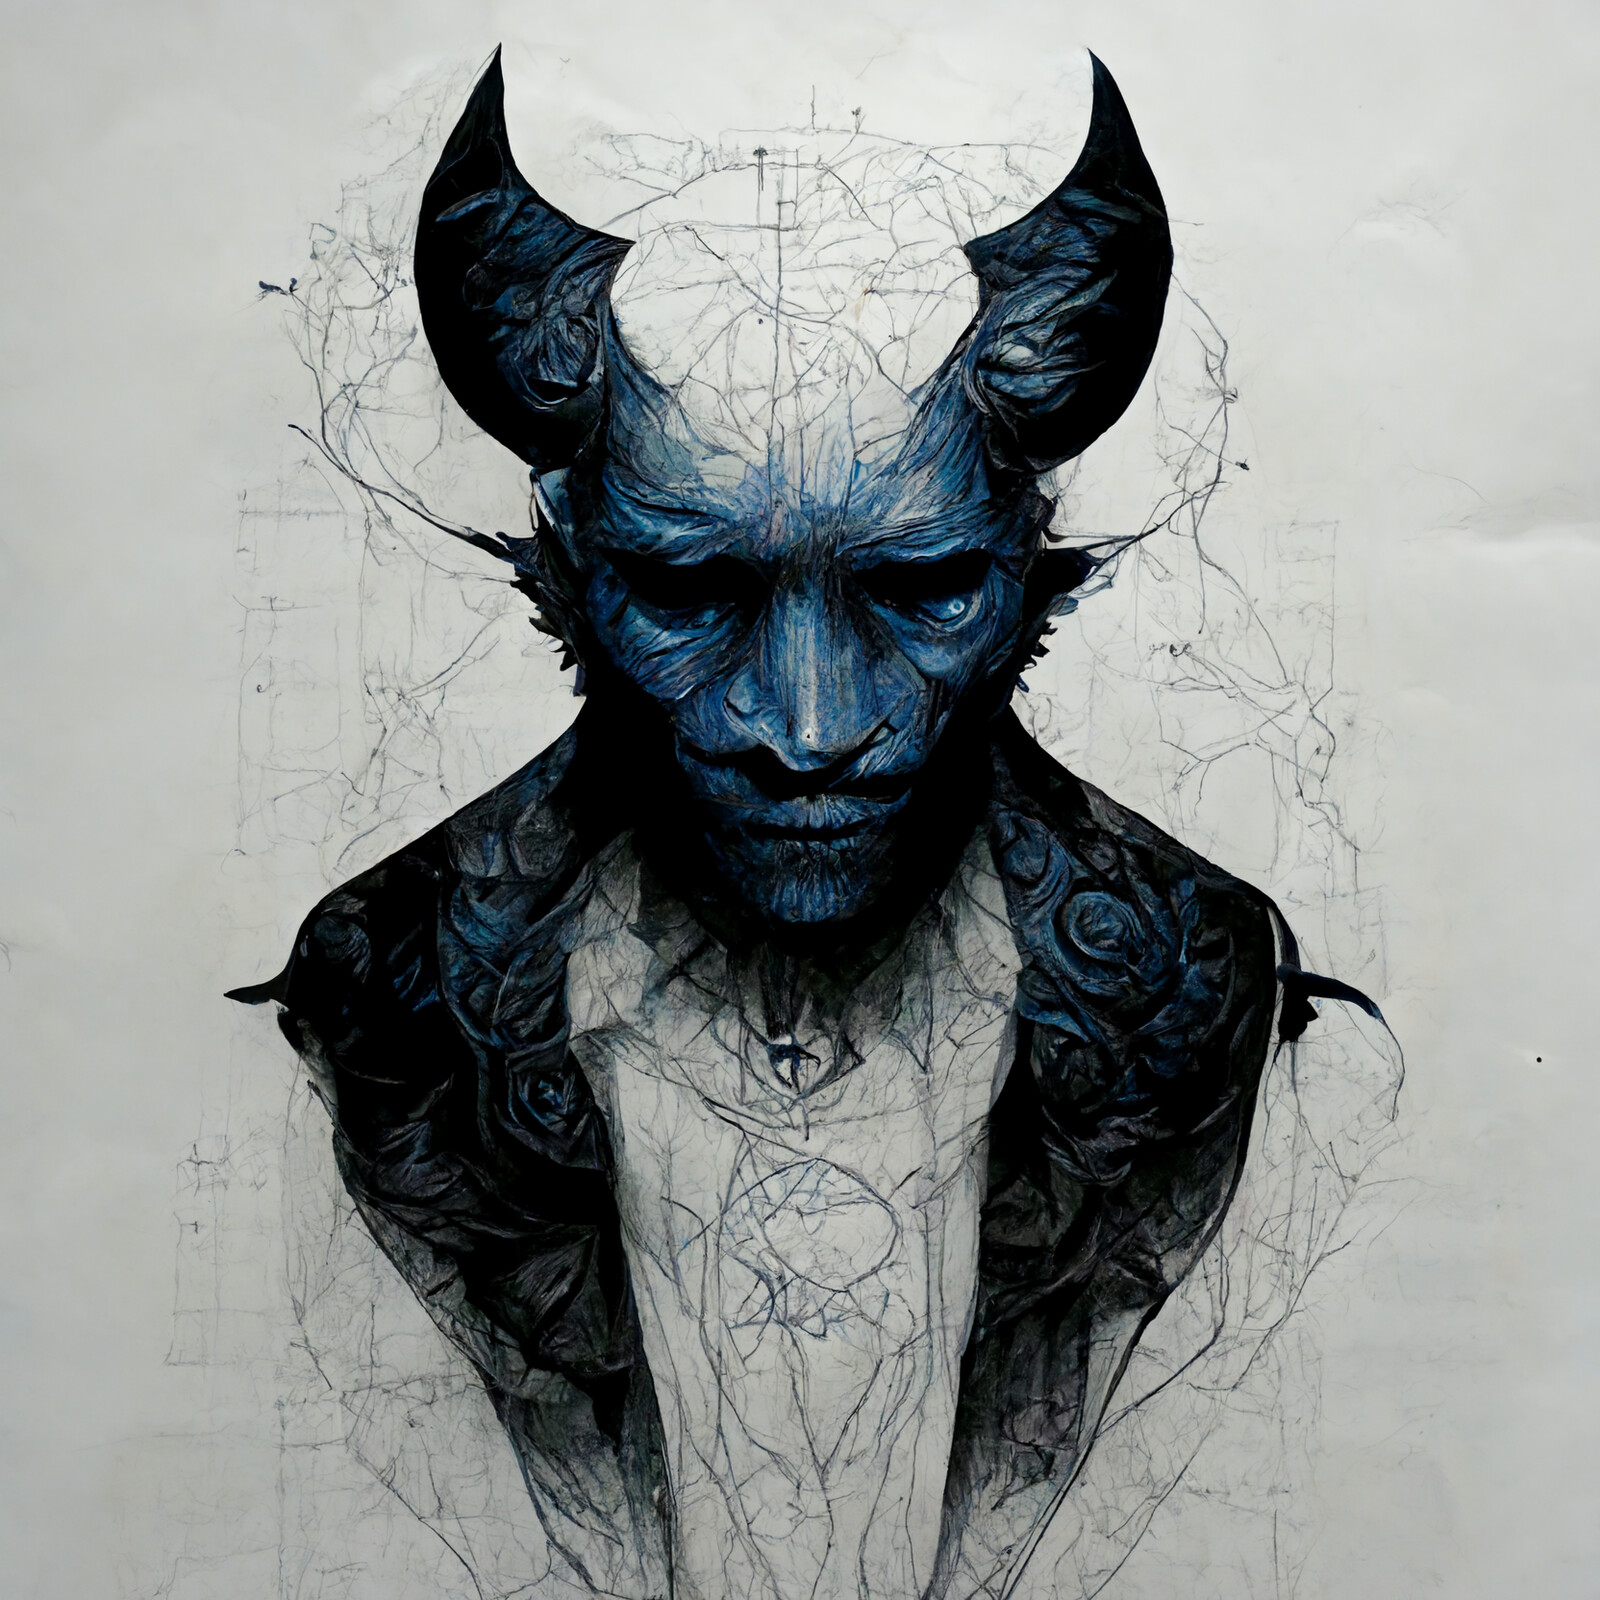 BLUE DEVIL
ARTWORK BY CHRISTOPHER BUST